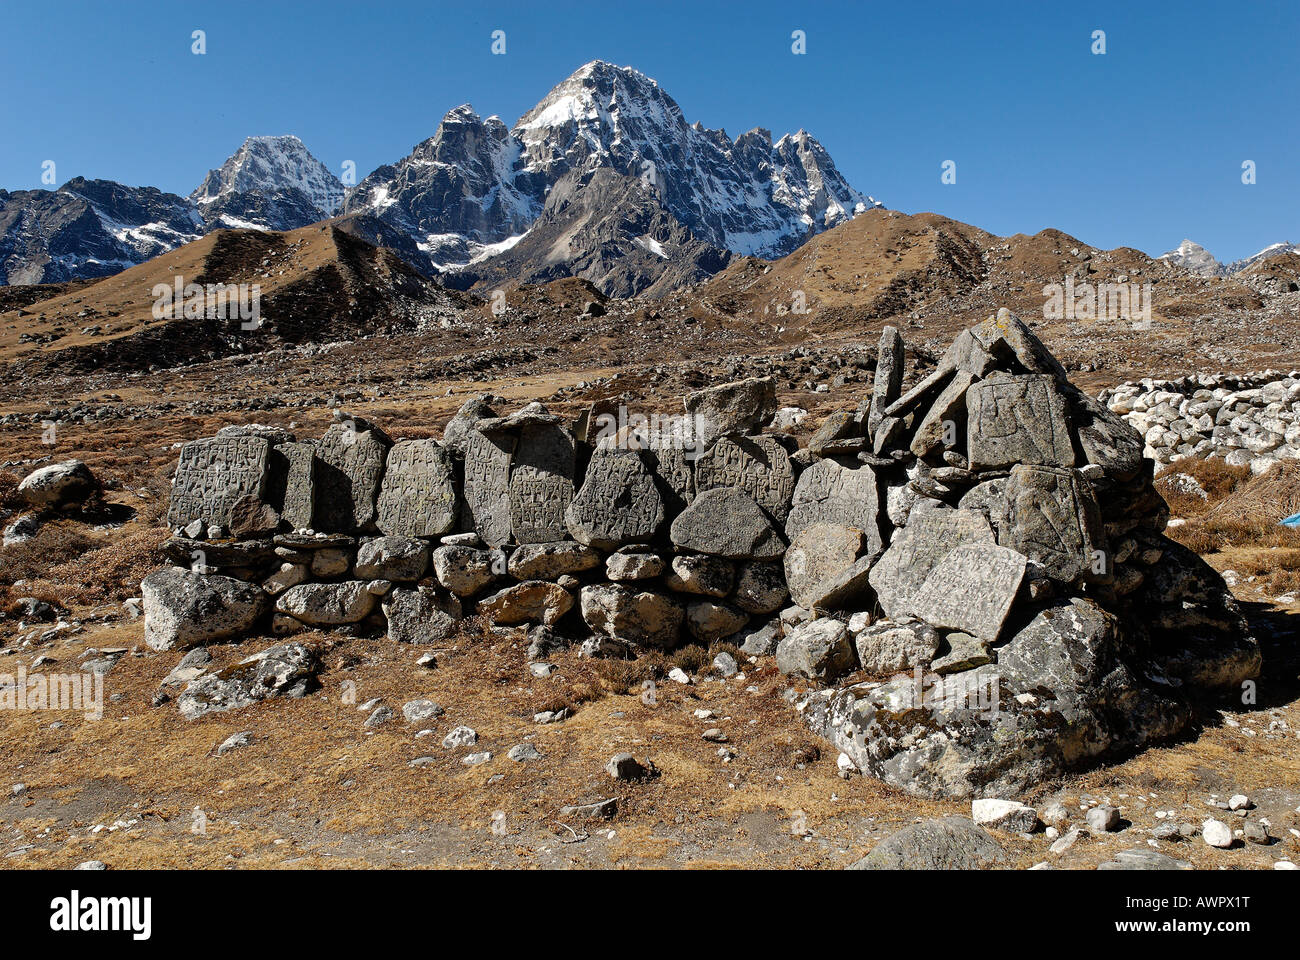 Mani wall at Thangnak (4700) with Pharilapche (6017), Sagarmatha National Park, Khumbu Himal, Nepal Stock Photo